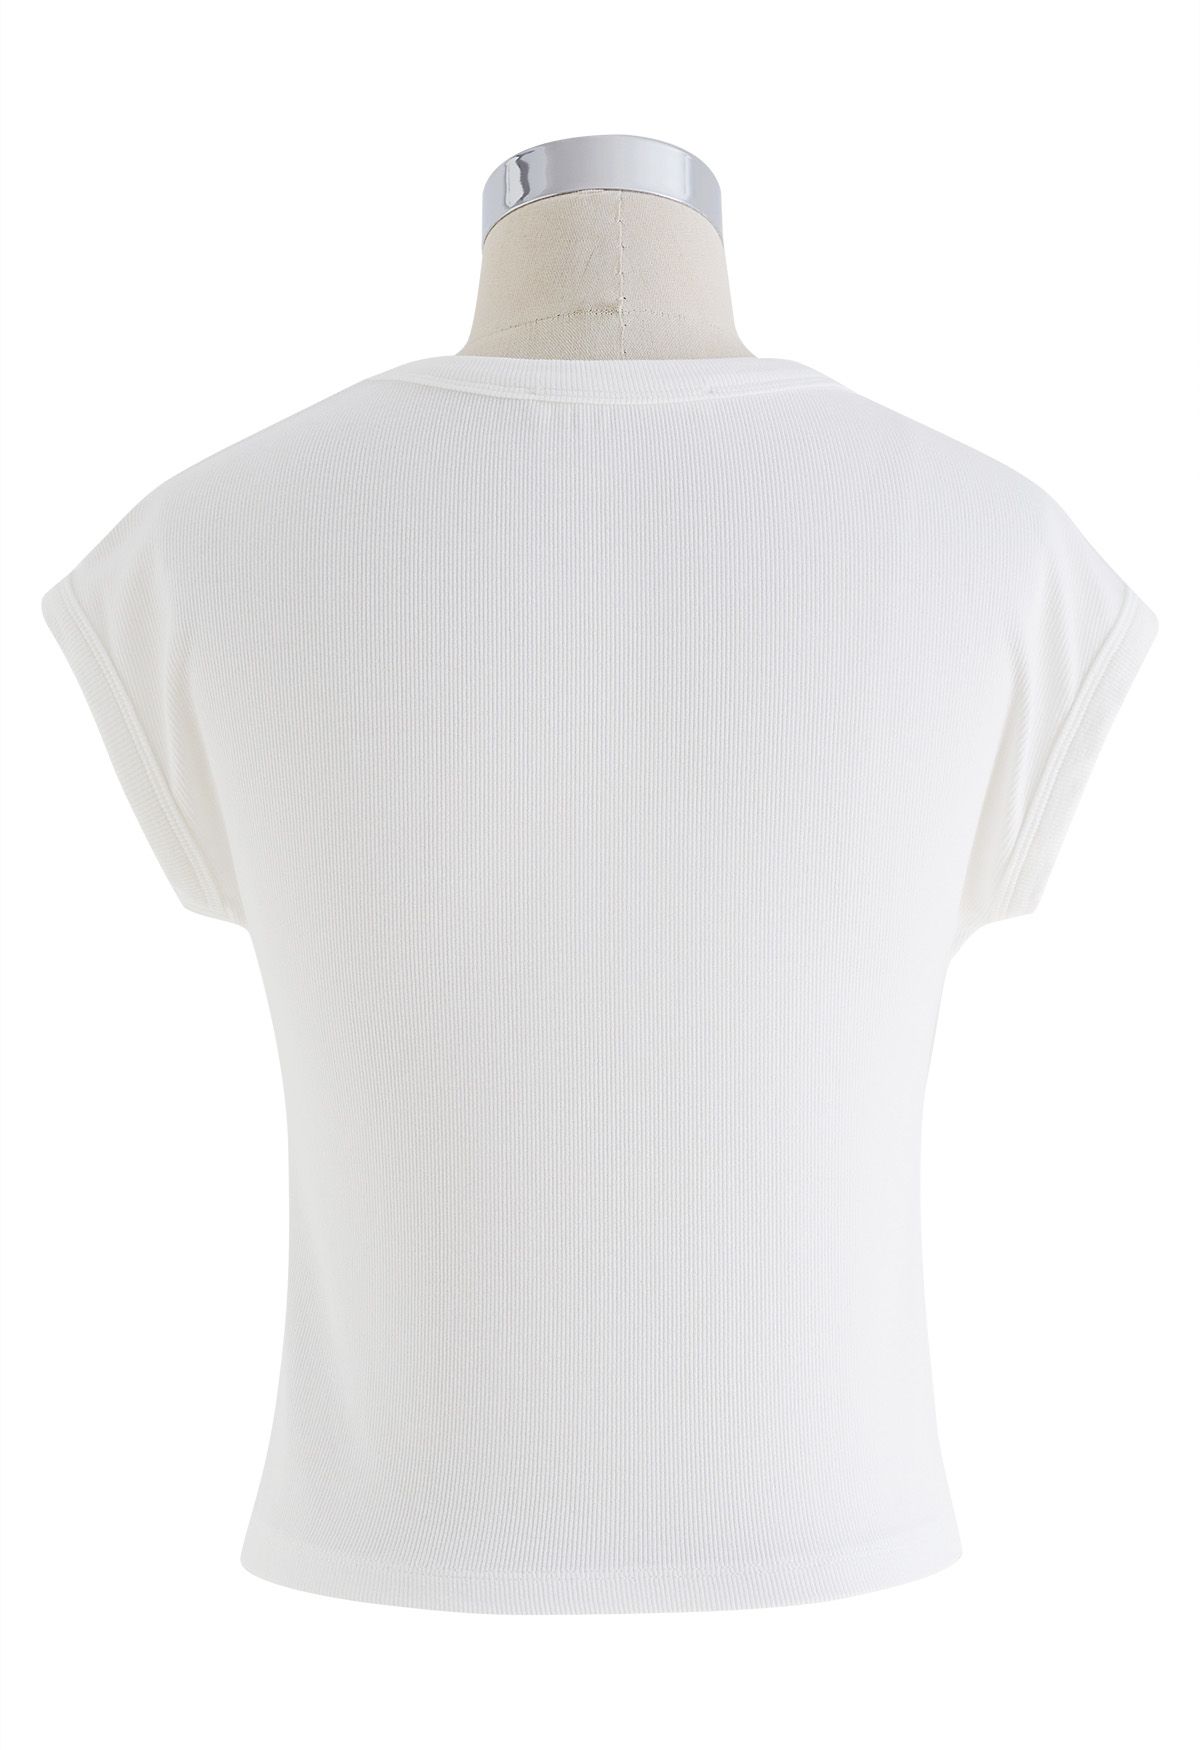 Top corto de algodón con cuello redondo elegante en blanco